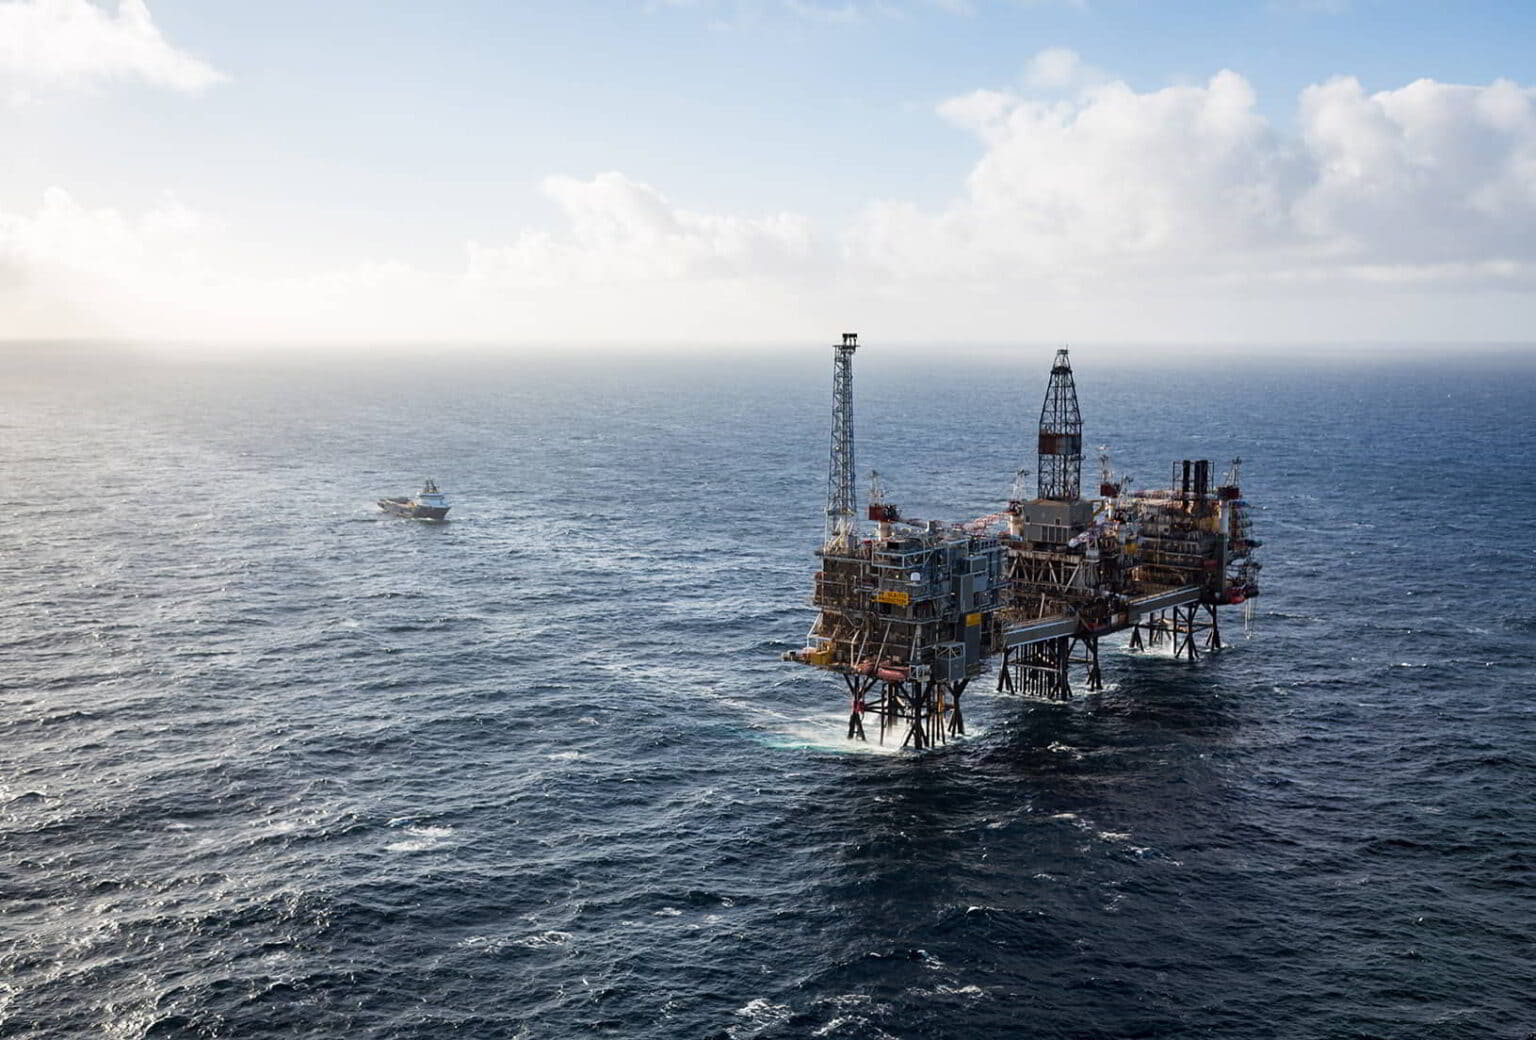 Semco Maritime lands deal for Aker BP’s Norwegian oil & gas assets